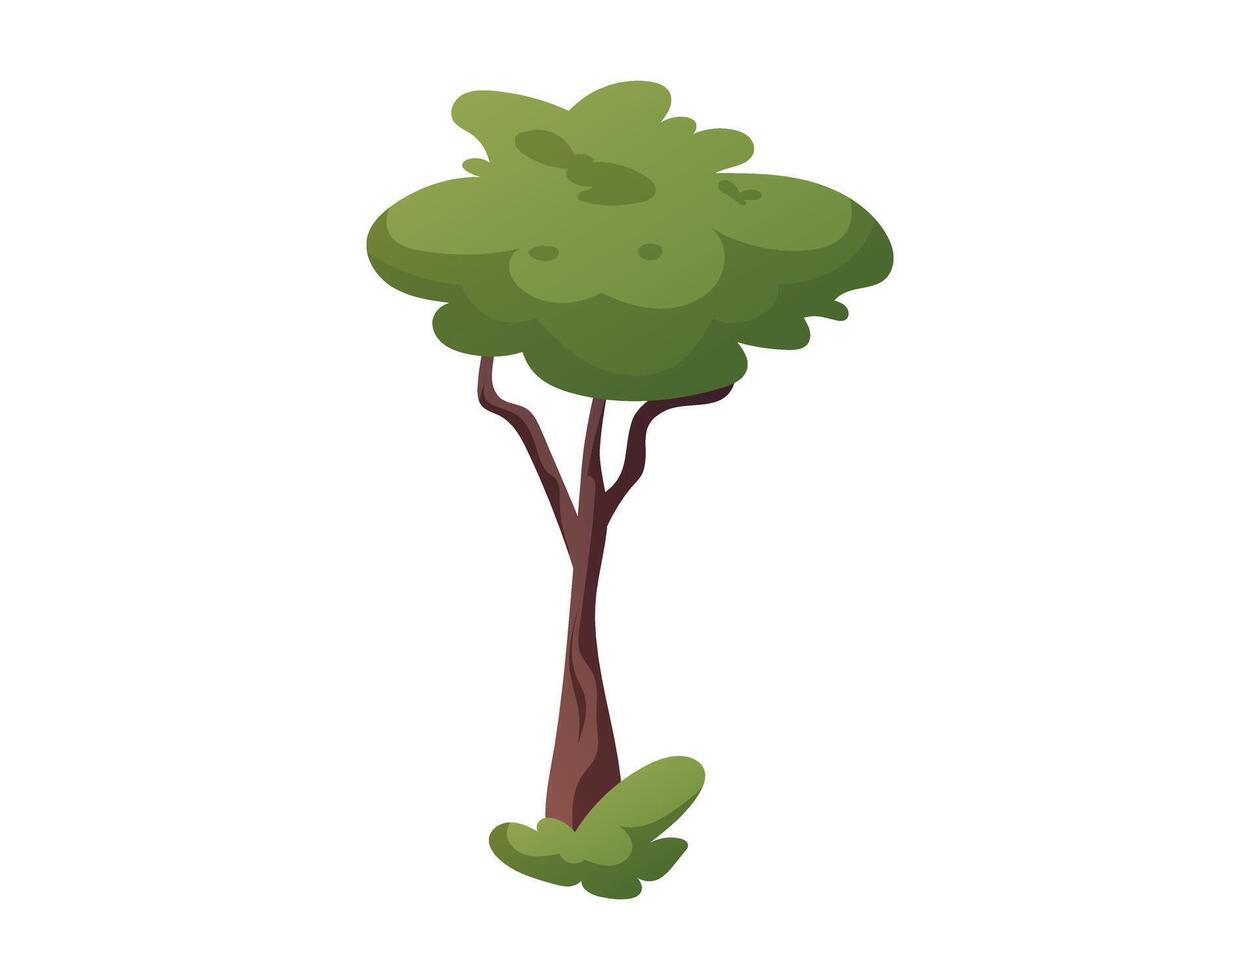 dibujos animados verano árbol con verde corona y follaje. vector aislado ilustración.